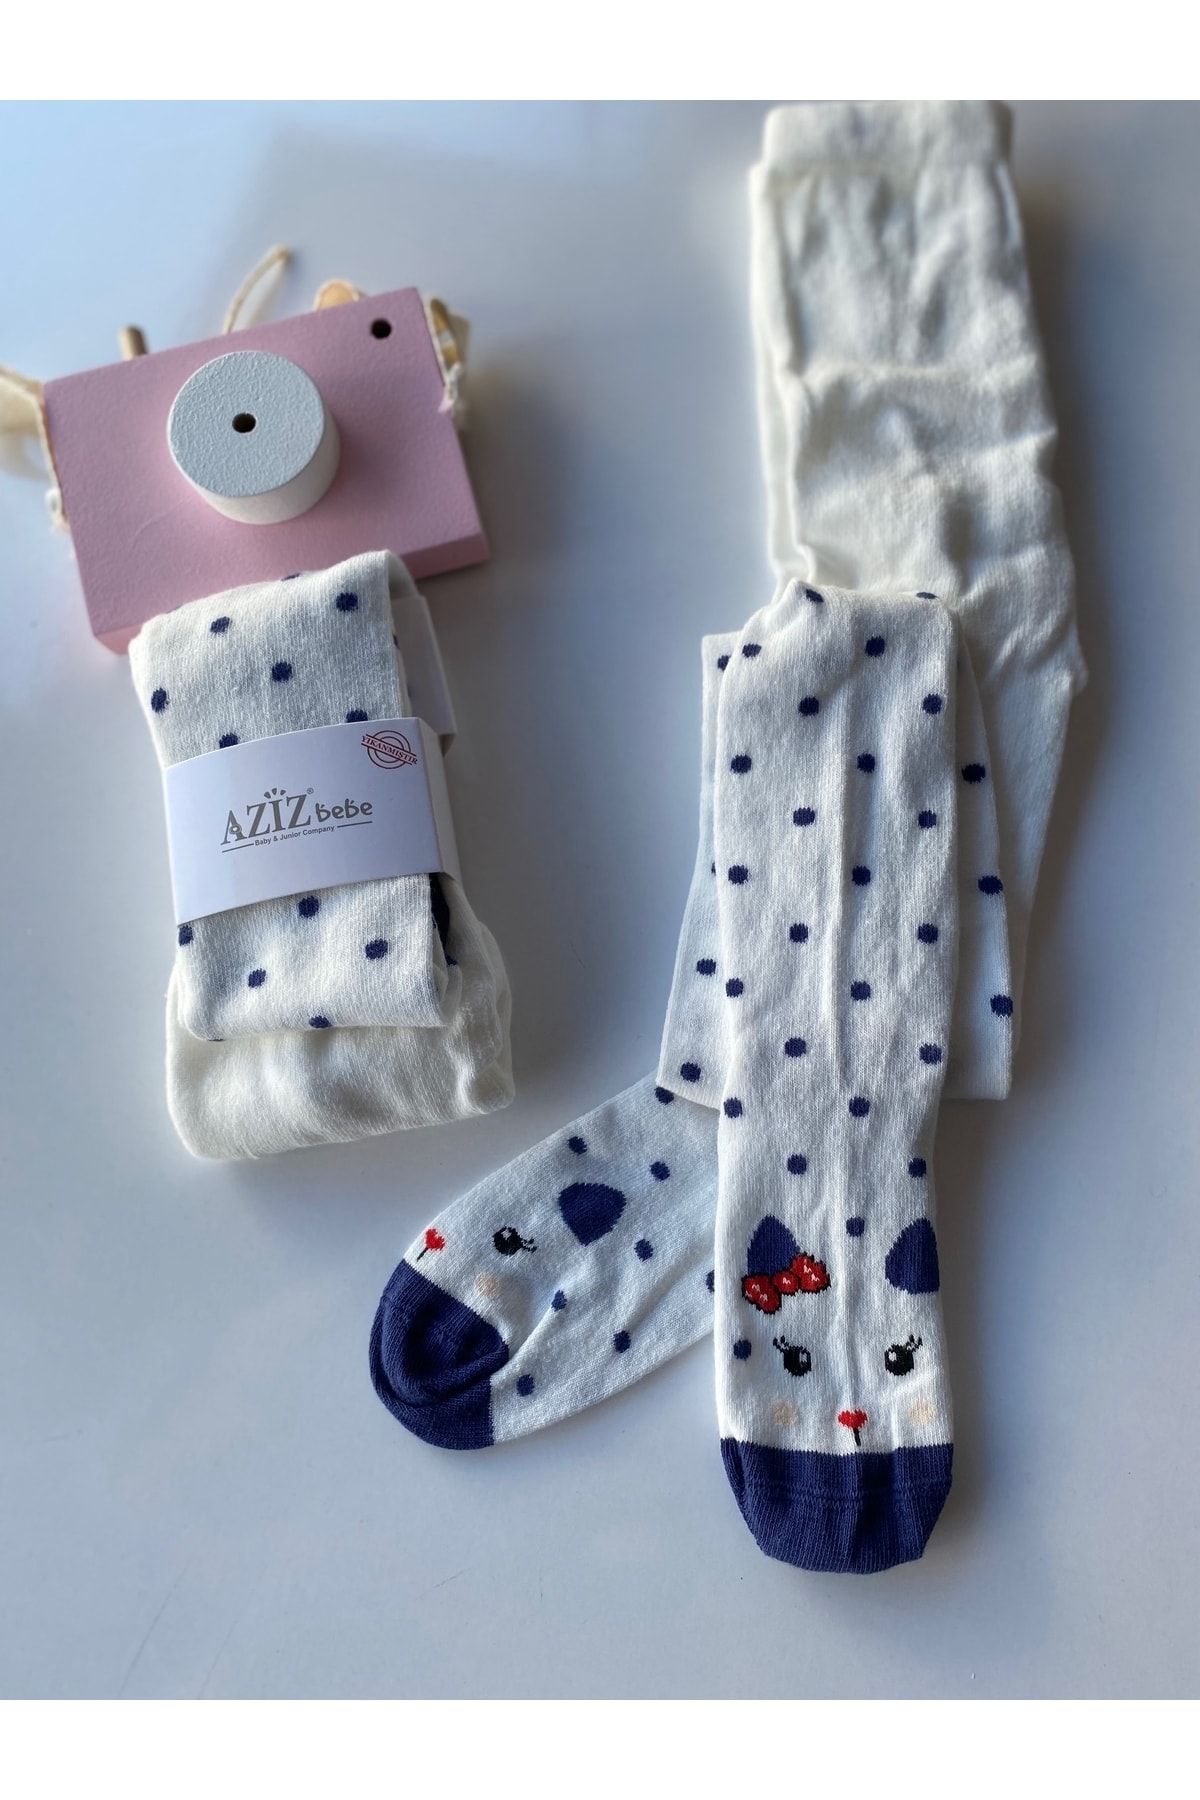 Aziz Bebe Kız Çocuk Desenli Ekru Külotlu Çorap